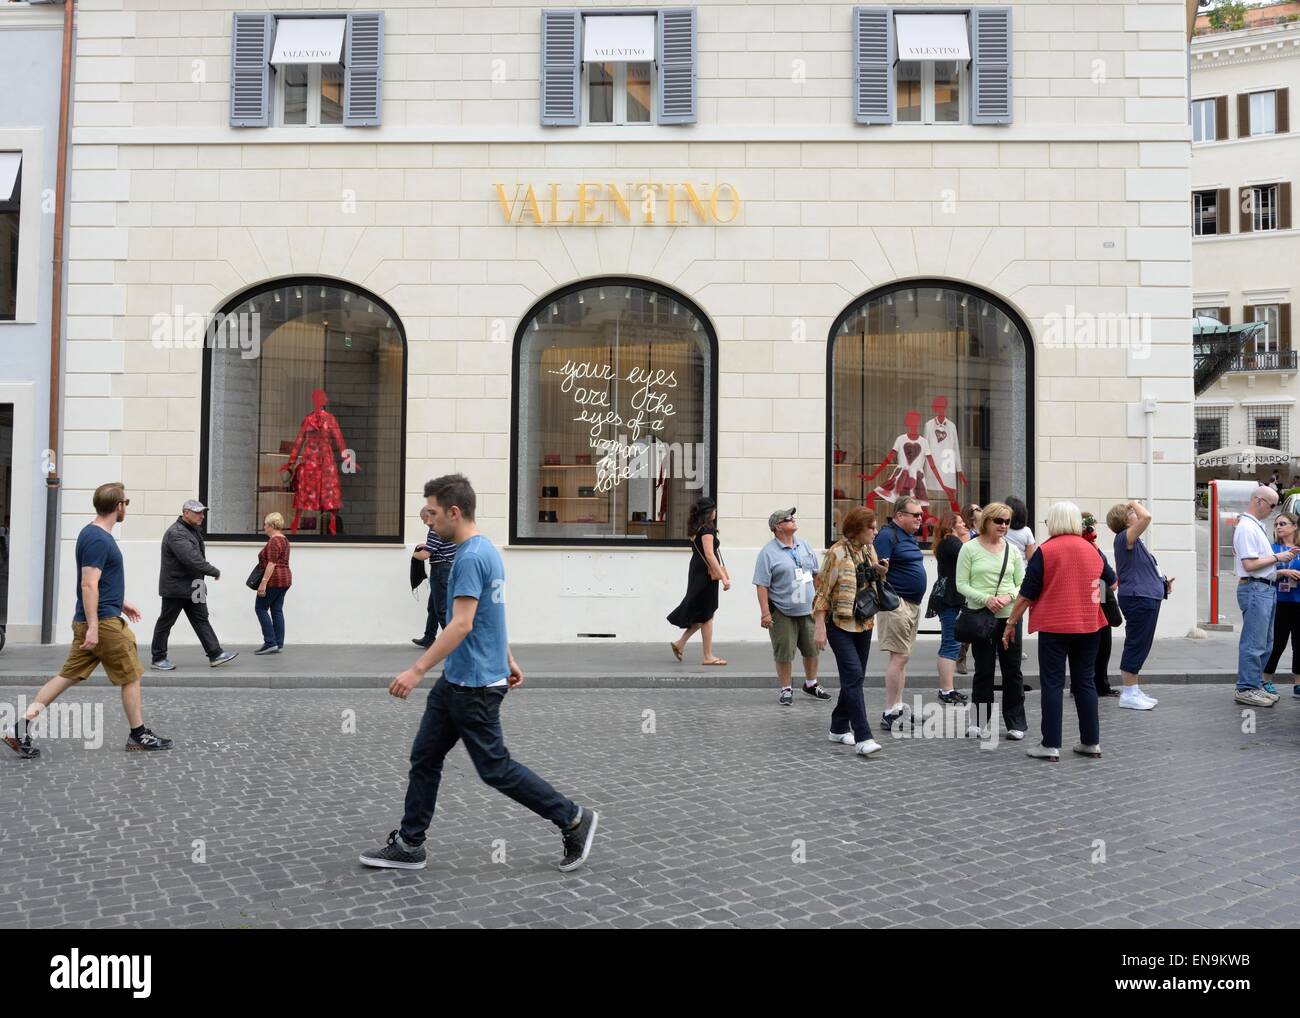 Valentino negozio di abbigliamento sulla SCALINATA DI PIAZZA DI SPAGNA,  Roma, Italia Foto stock - Alamy